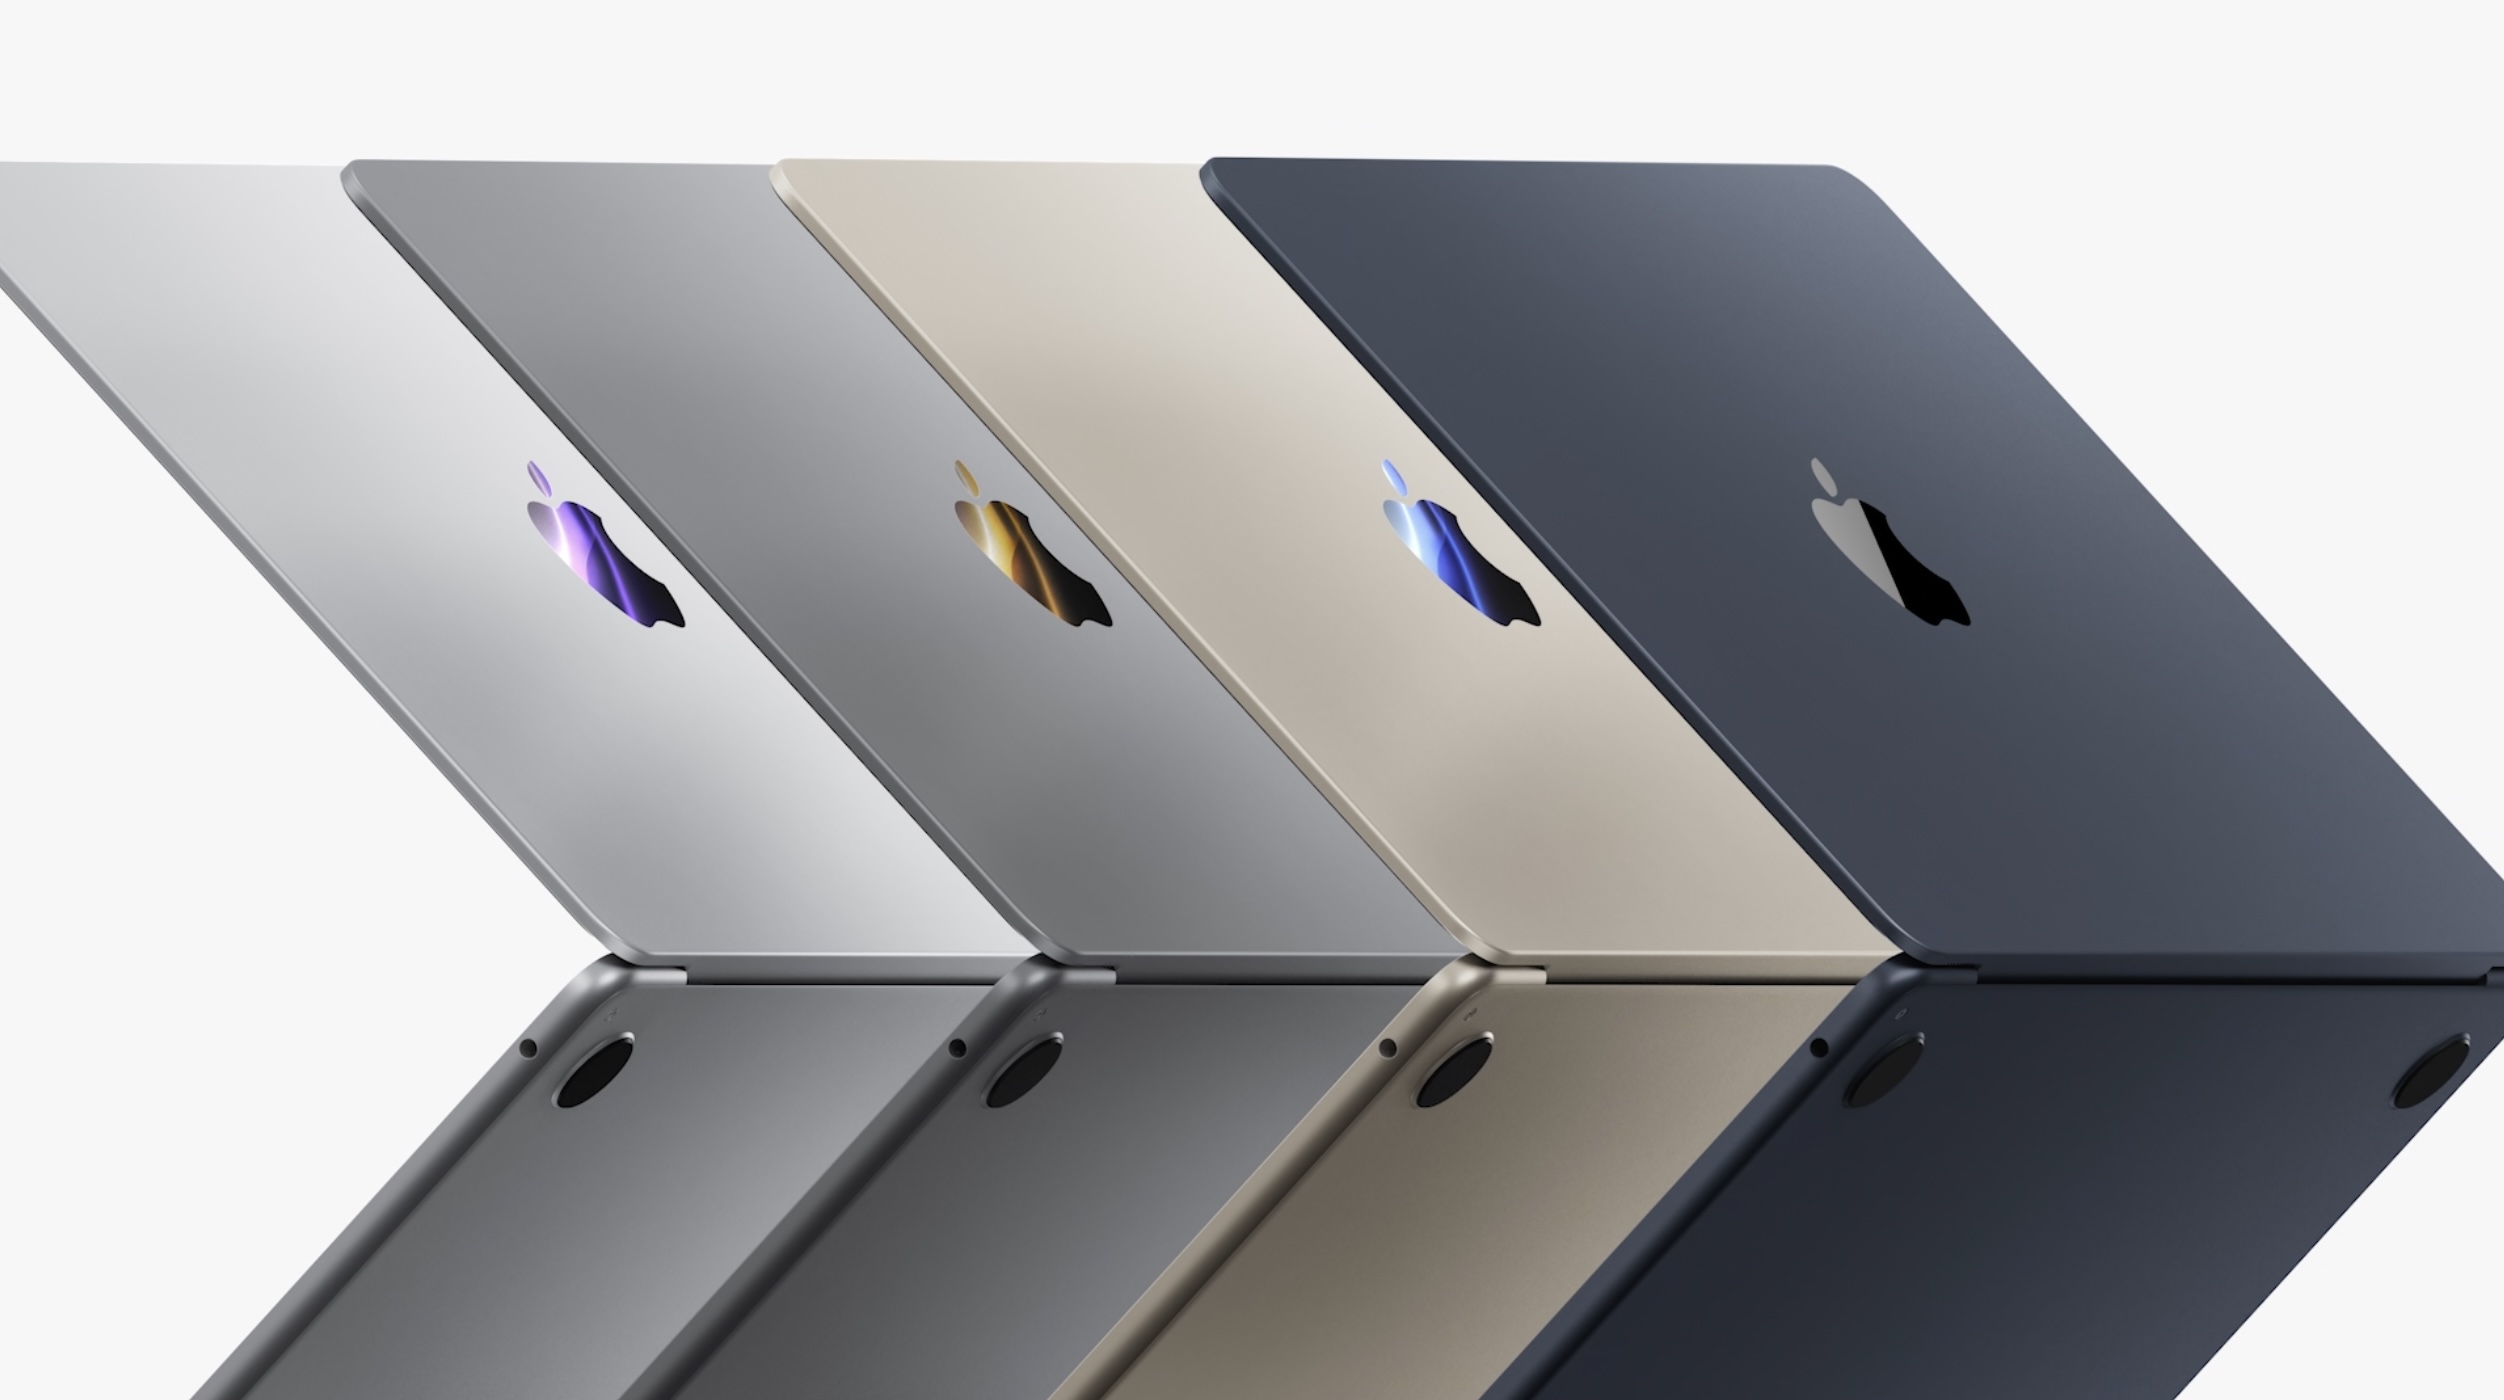 M2 MacBook Air all-time lows return at $150, plus more